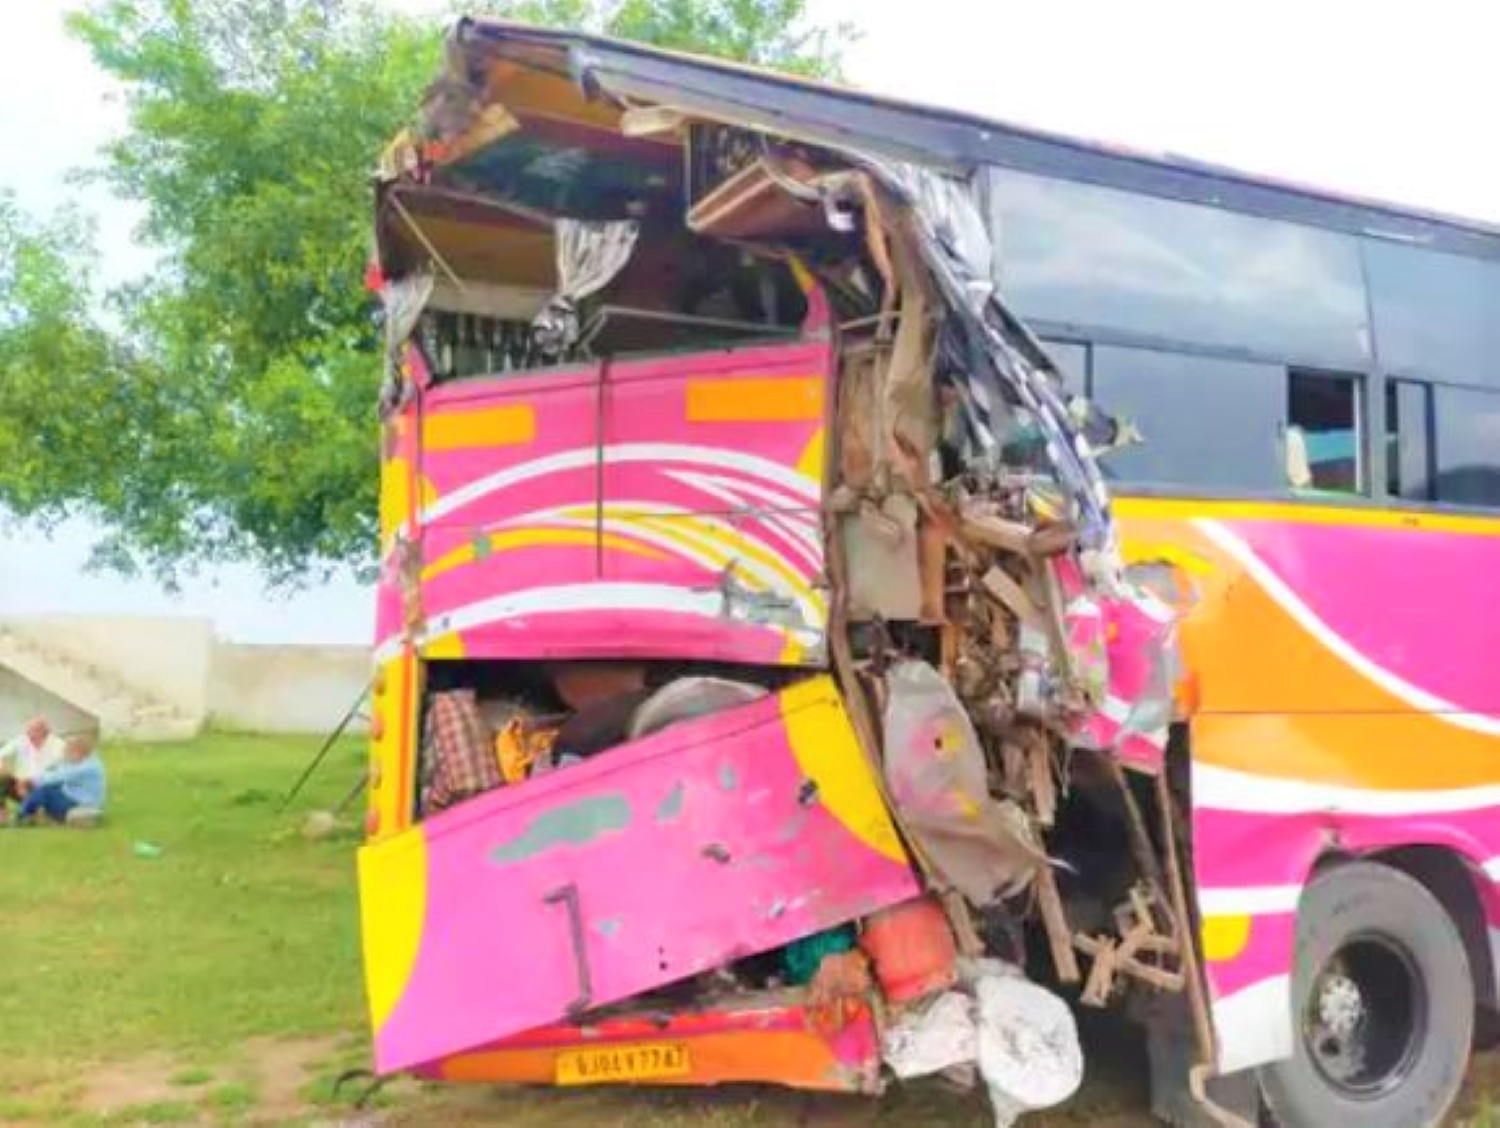 राजस्थान में भीषण सड़क हादसा, यात्रियों से भरी बस को ट्रक ने पीछे से मारी टक्कर, 11 की मौत, बस में सवार थे 57 से ज्यादा लोग